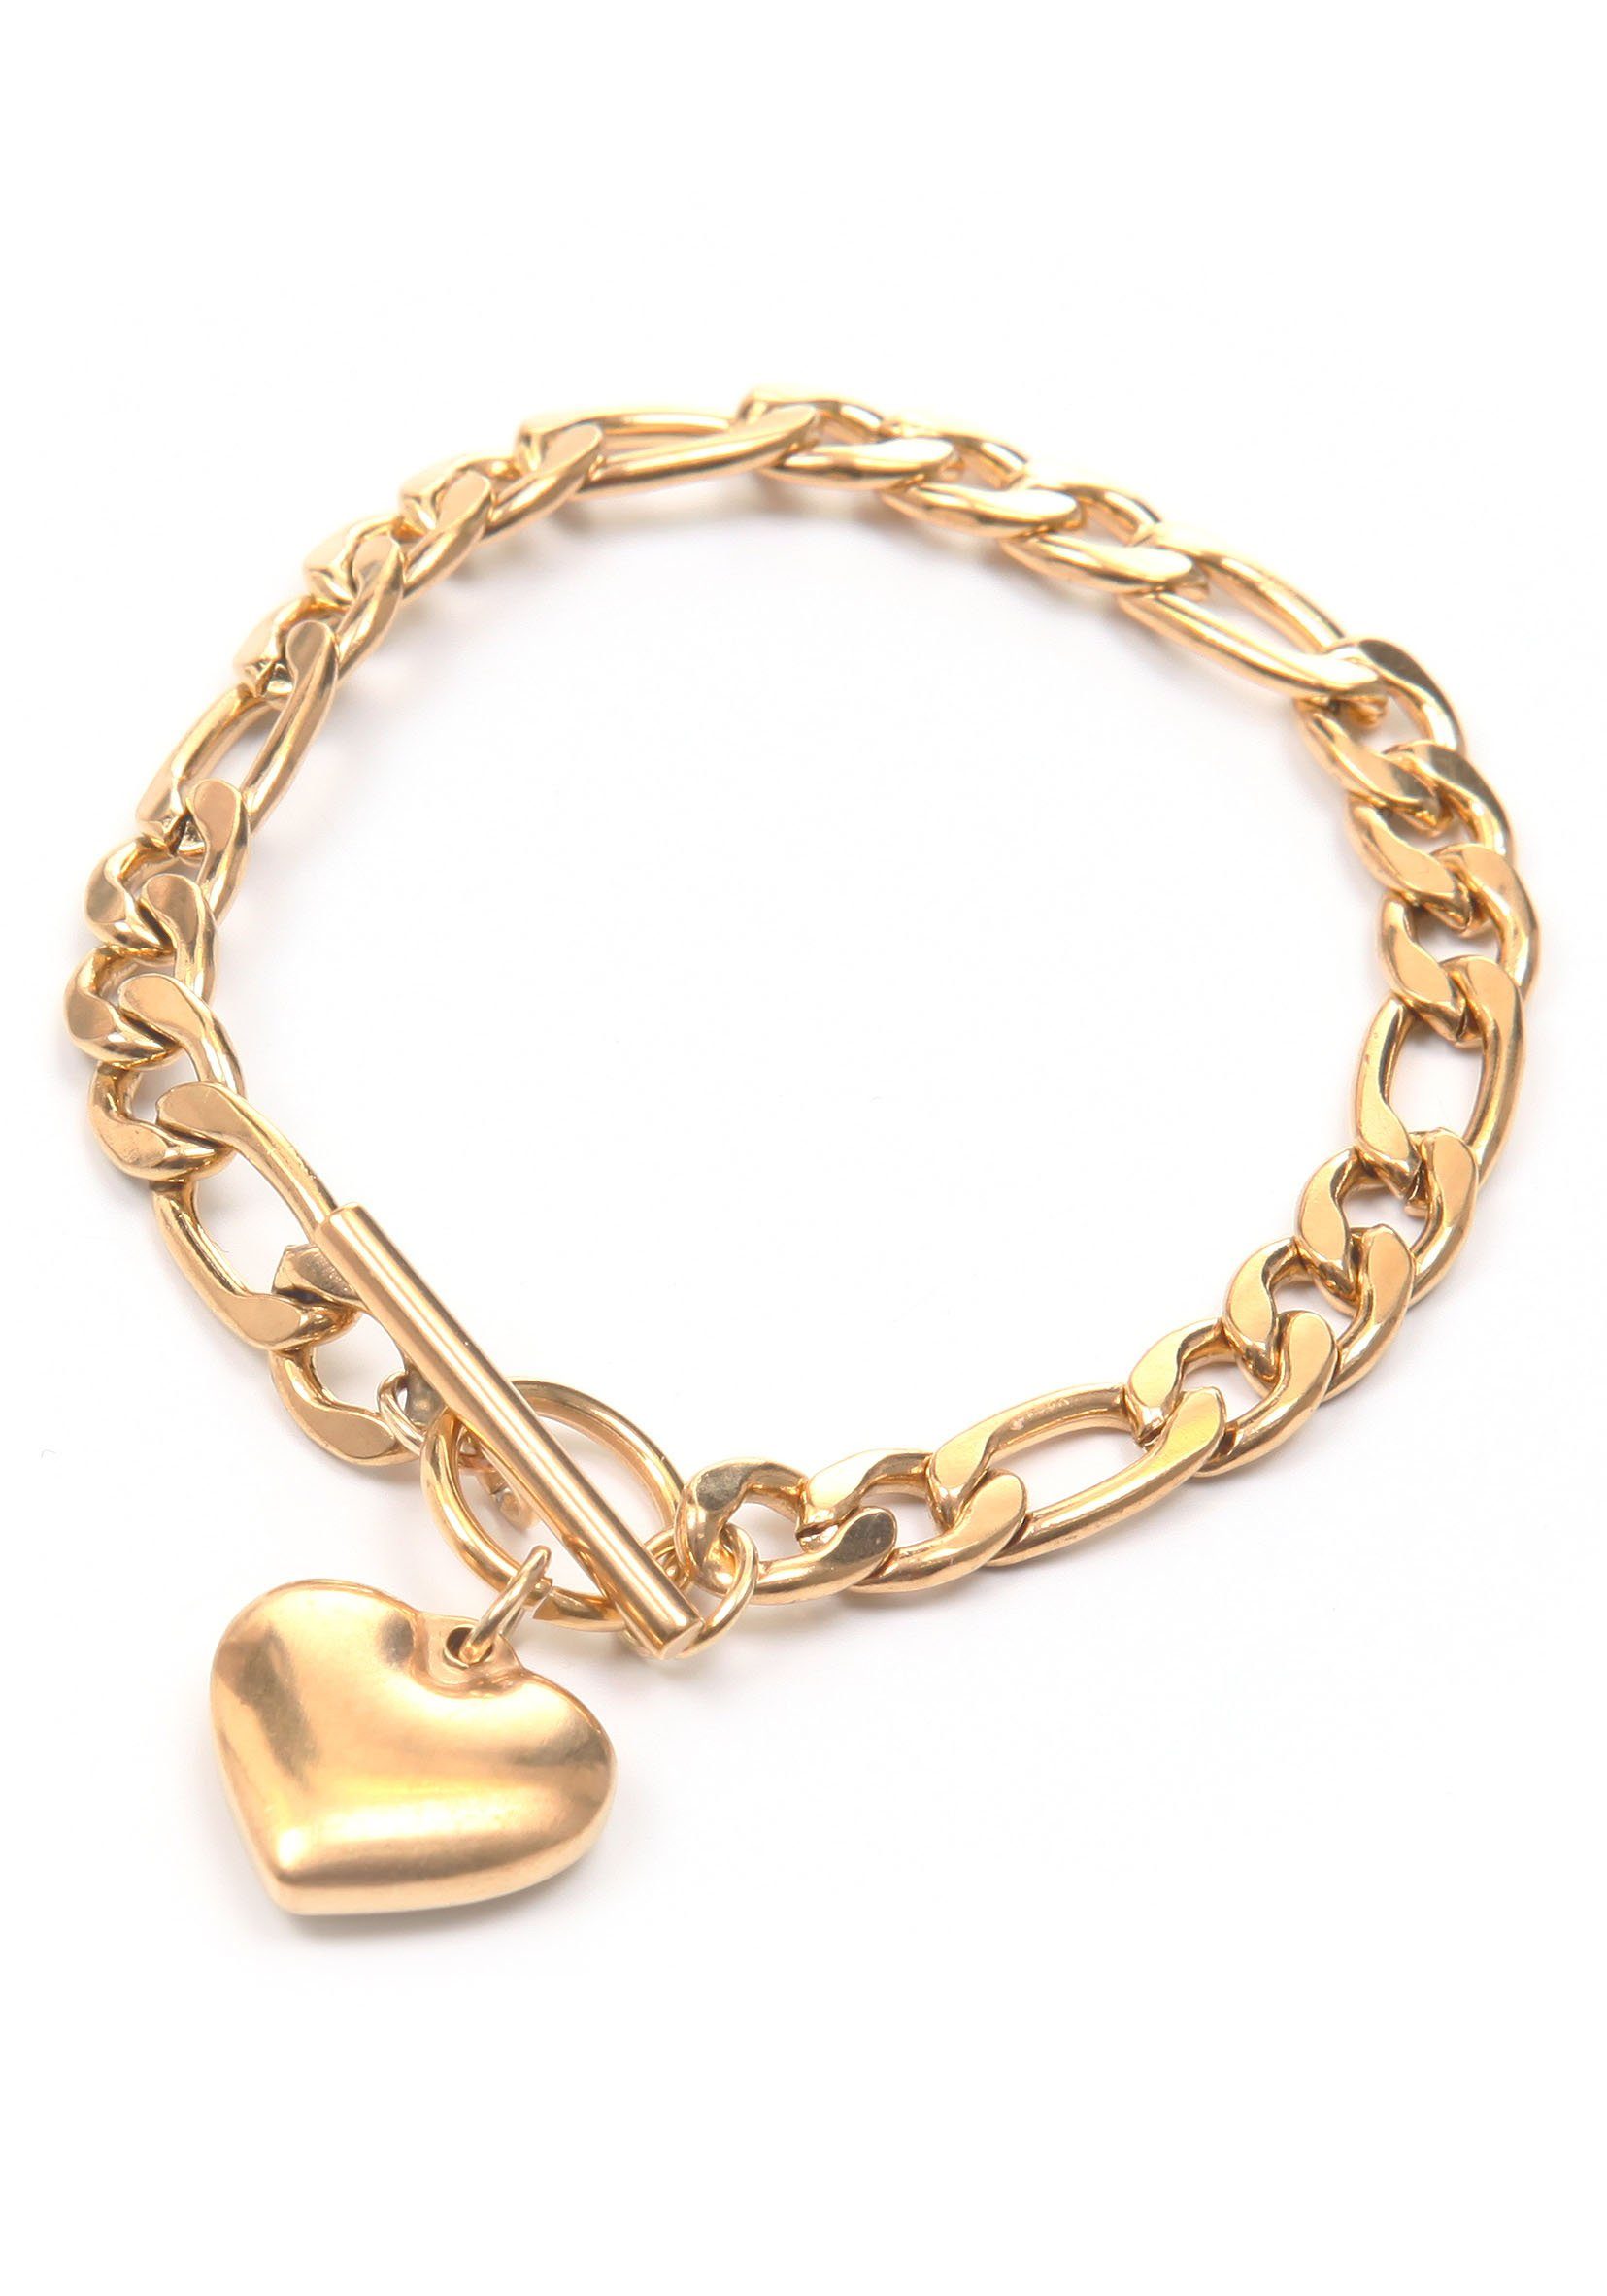 Firetti Armband Herz, vergoldet, lieblich